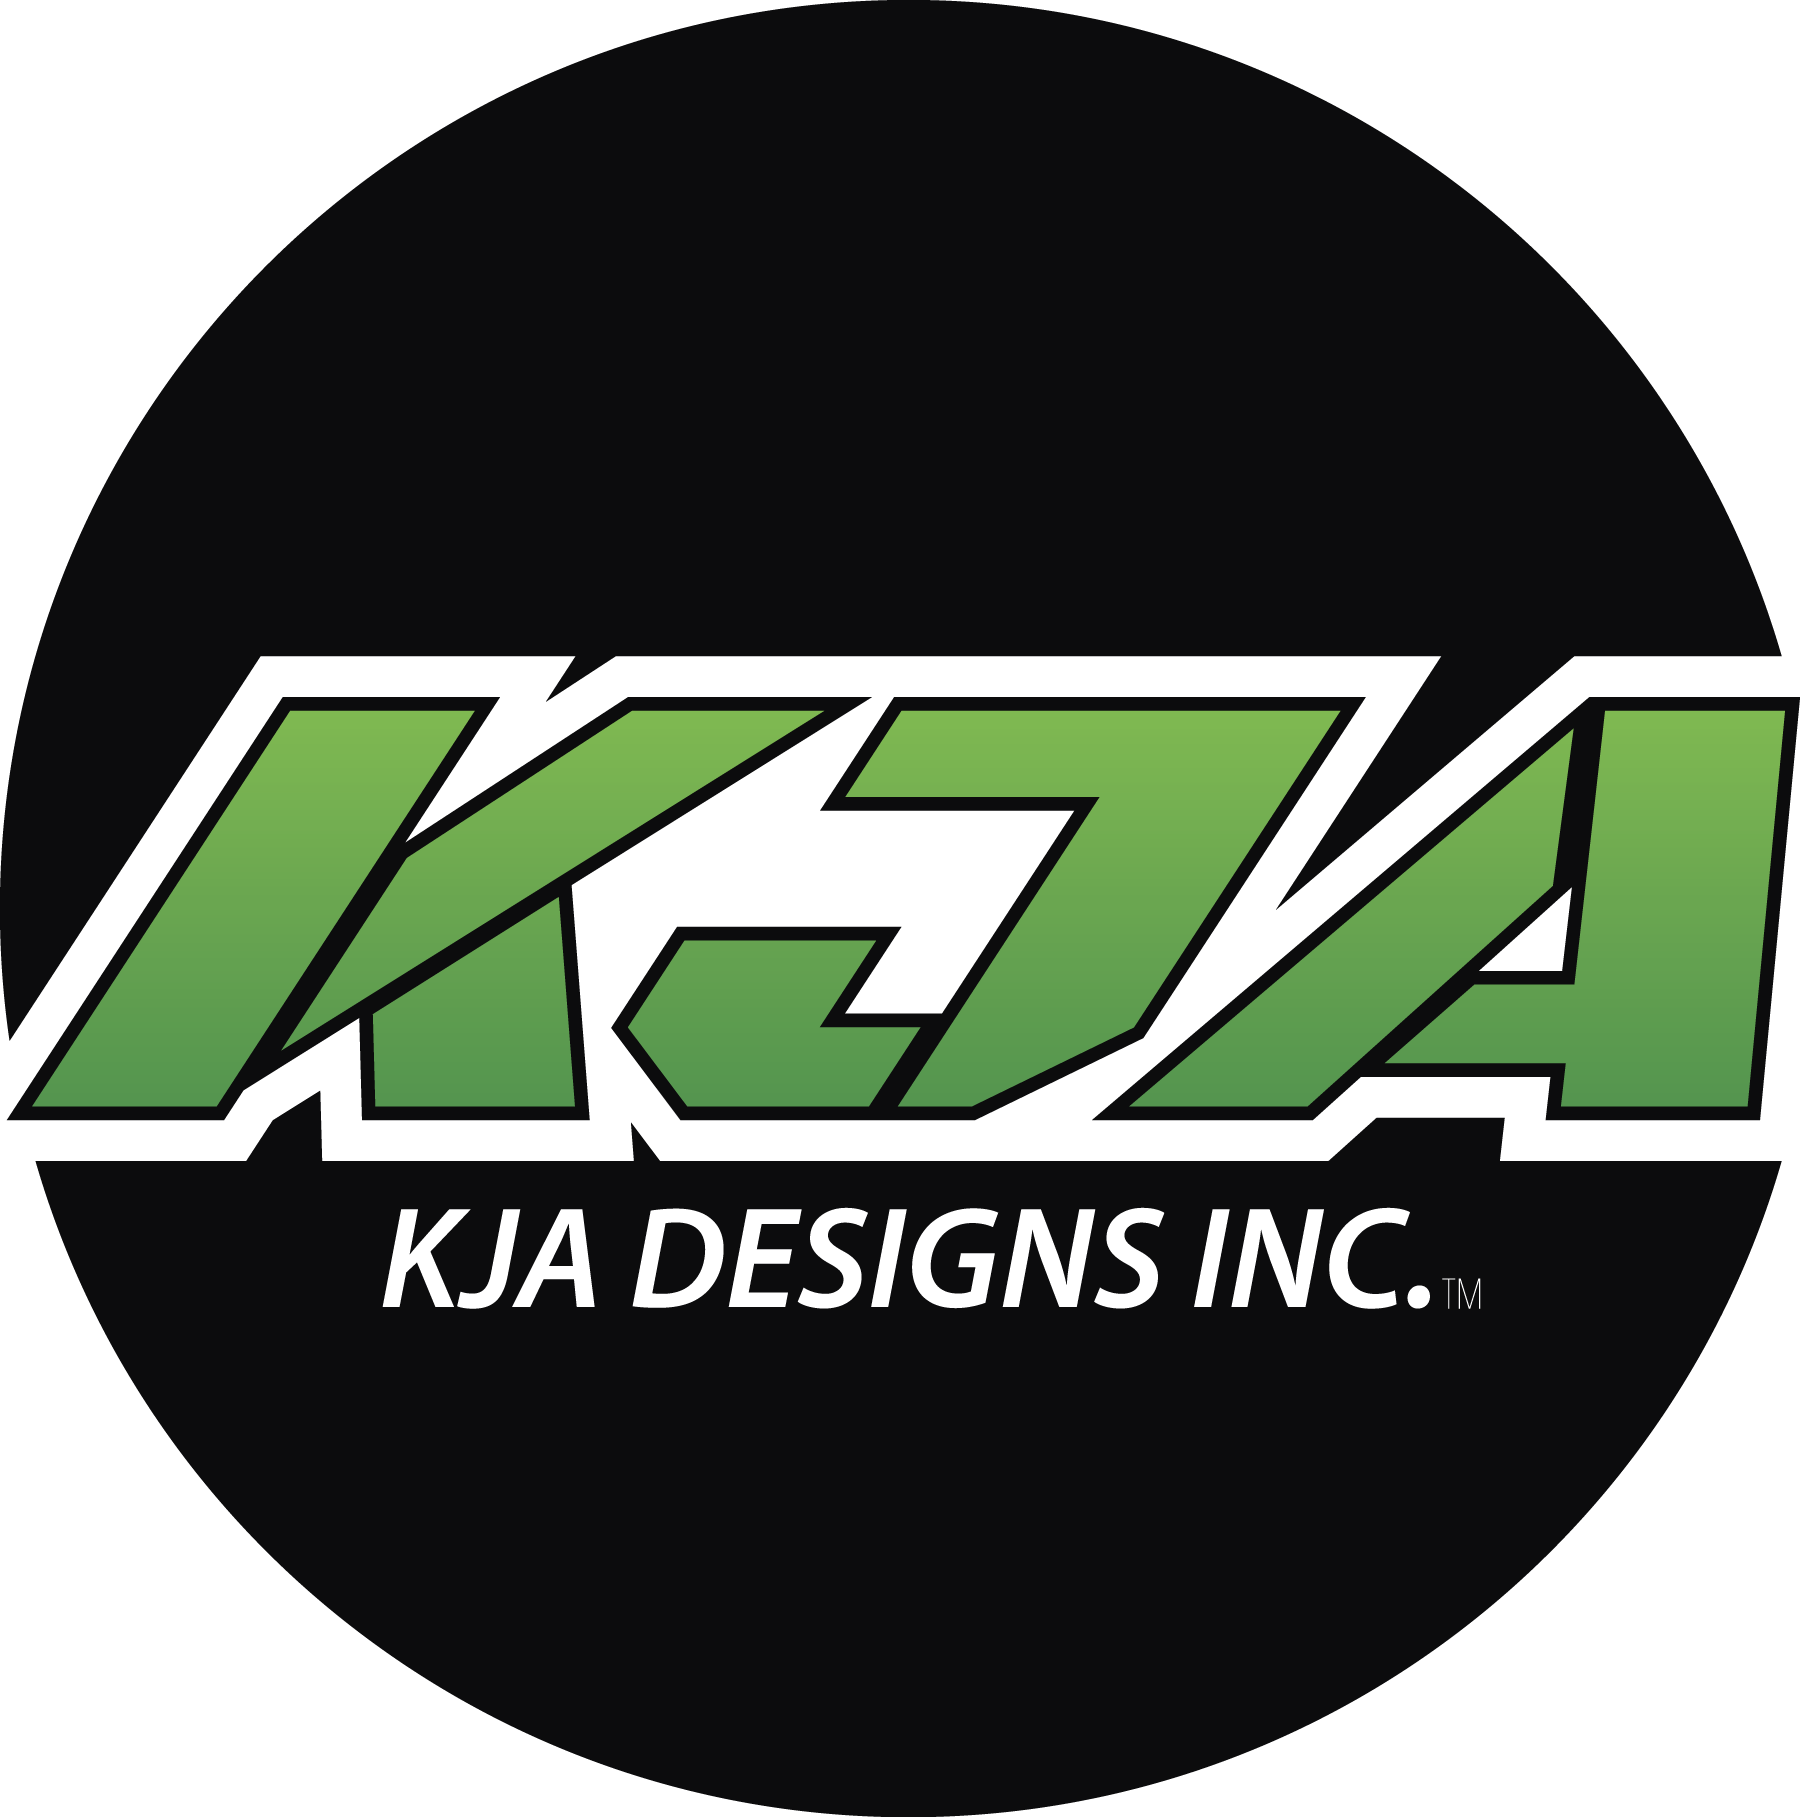 KJA Designs Inc.™ 2C on site